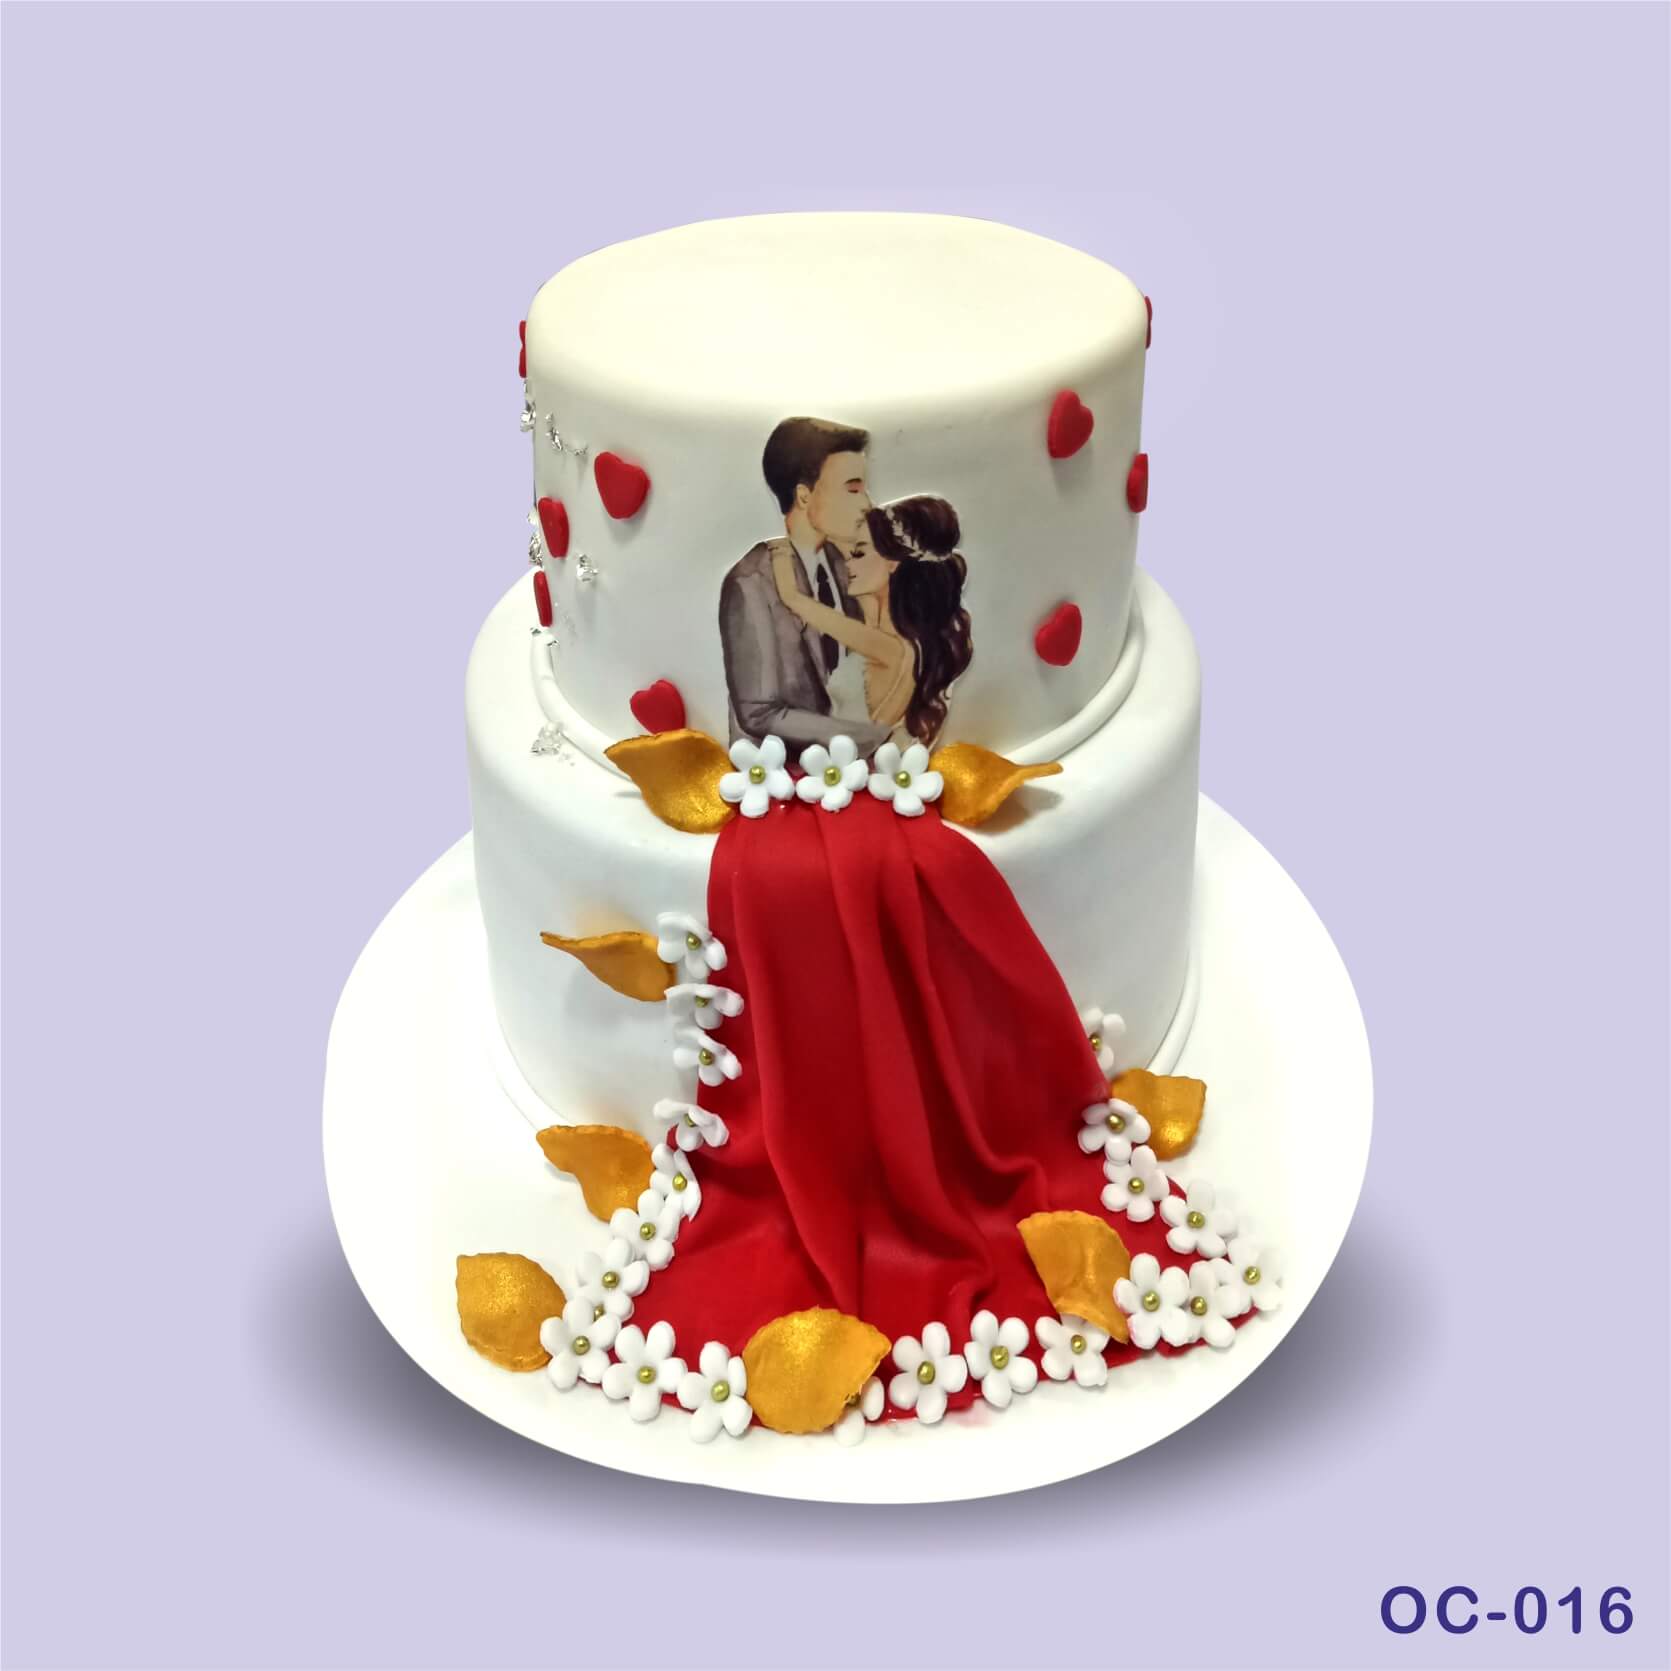 Buy Lovely Couple Anniversary Fondant Cake Online in Delhi NCR : Fondant  Cake Studio